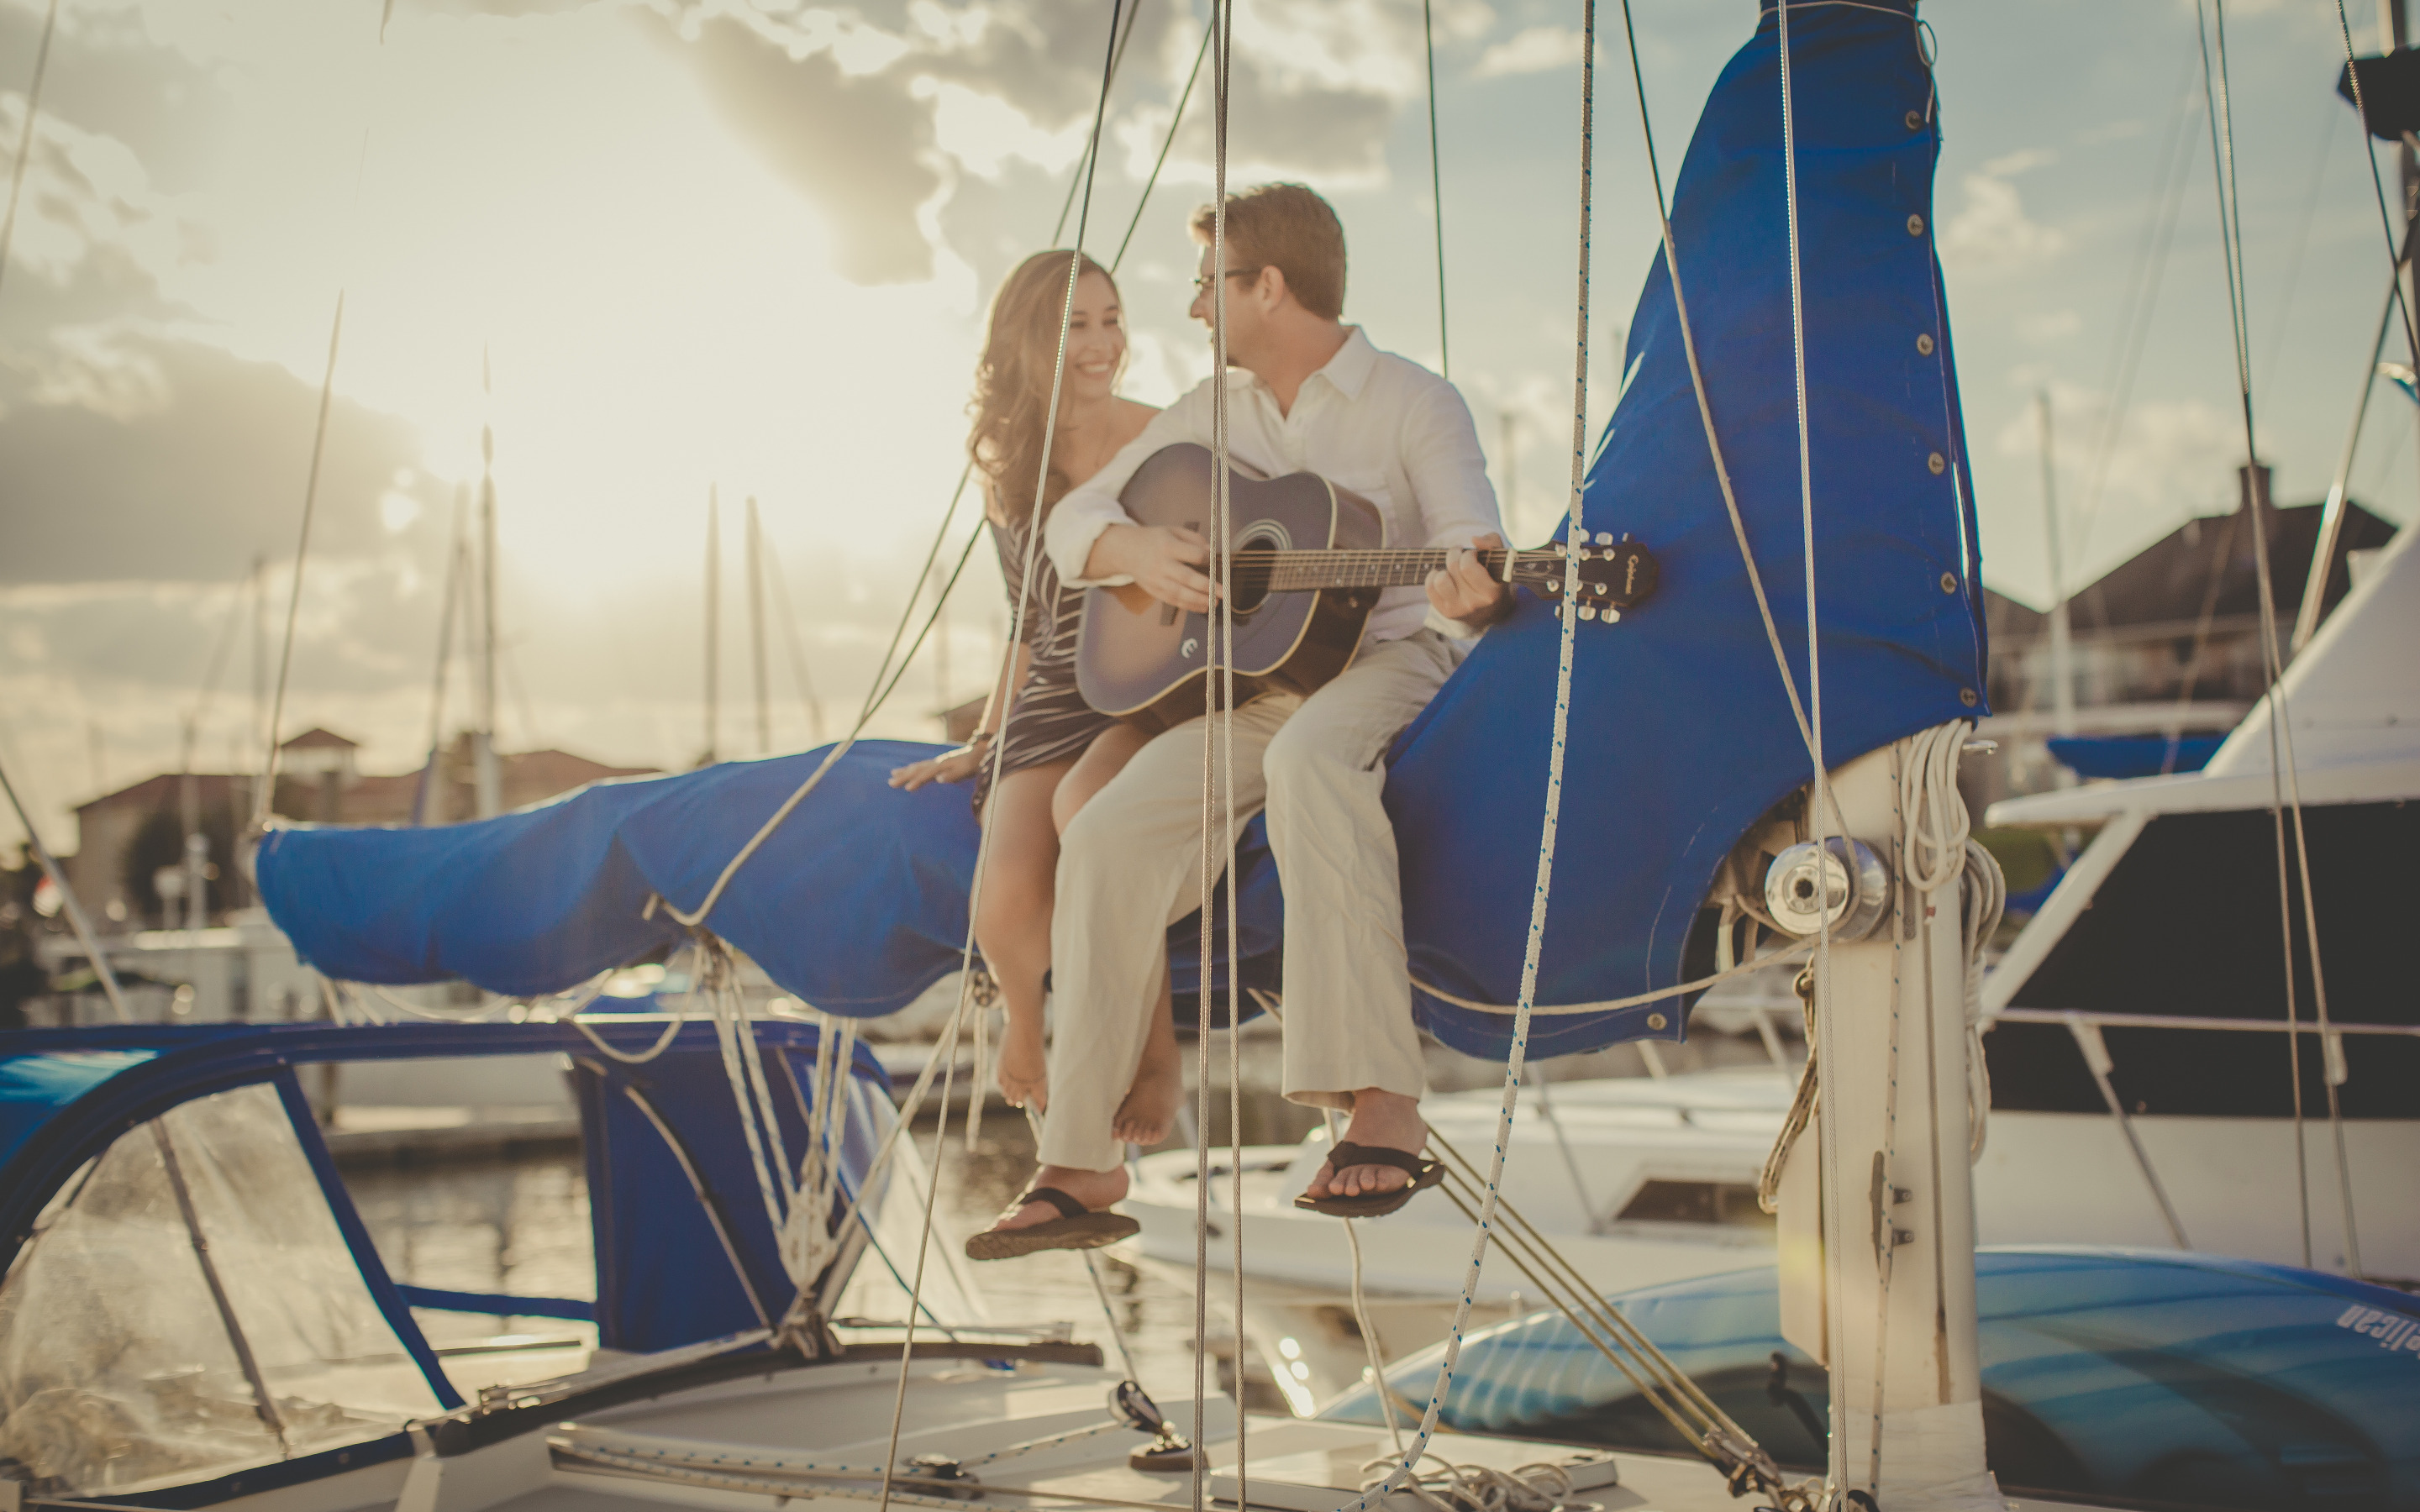 Музыка палуба. Парень с девушкой на яхте. Фотосессия на парусной яхте. Фотосессия под парусом. Романтическая фотосессия на яхте.